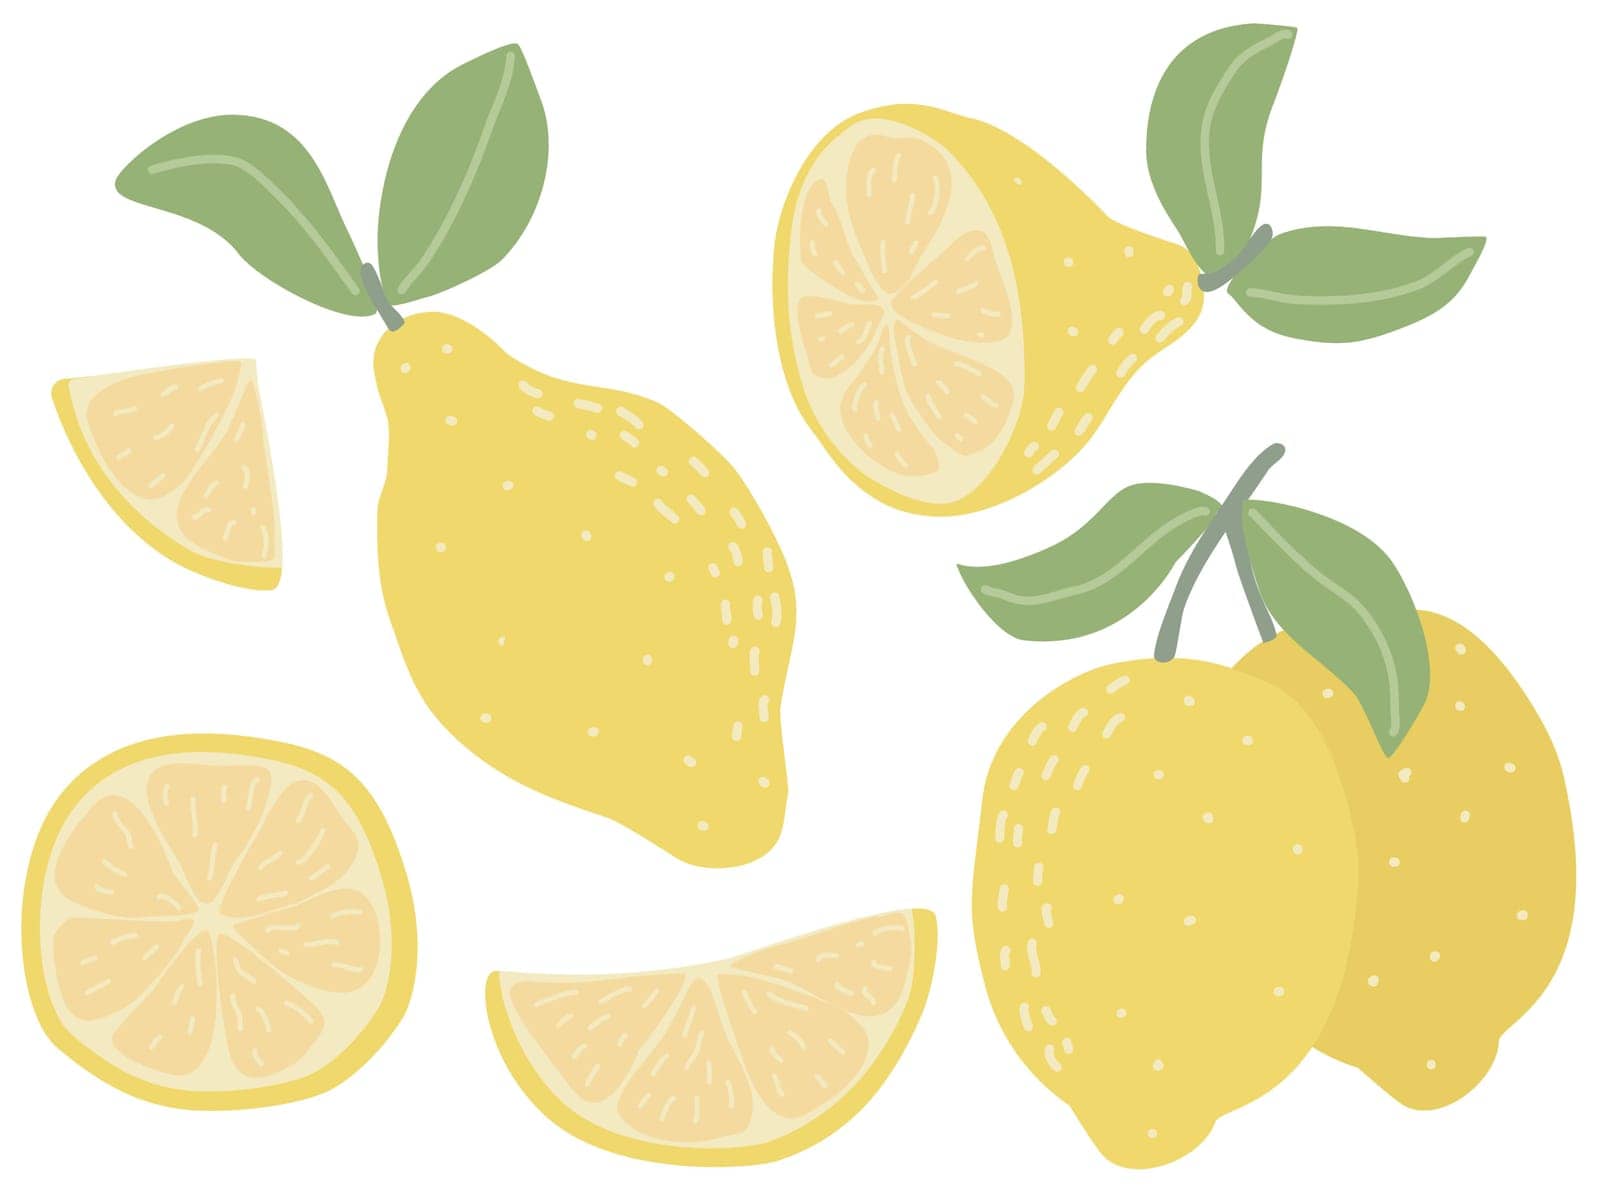 Modern set of lemons isolated on white background. Abstract hand drawn citrus fruits clip art. Whole lemon, fruit on branch, lemon slice, flat illustration, vector